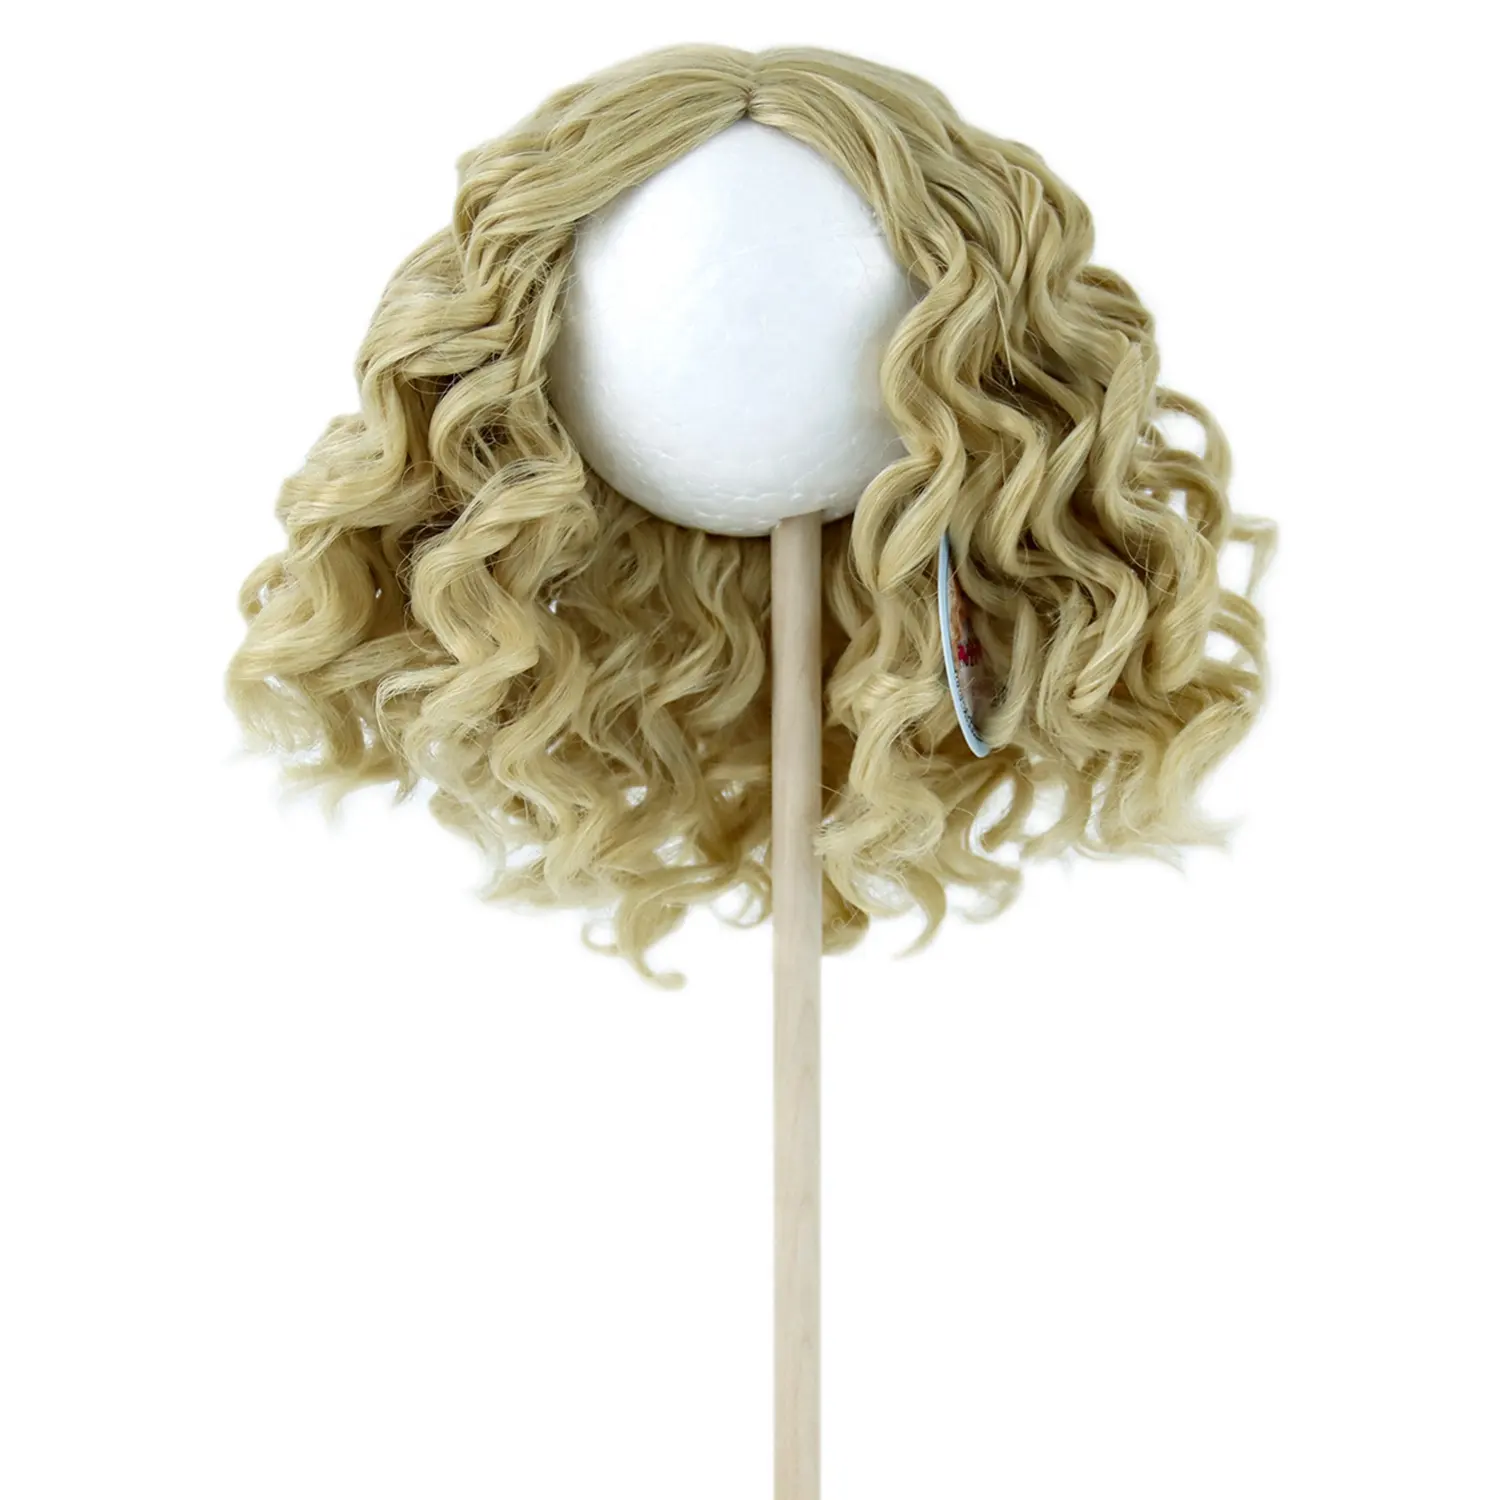 Peluca de muñeca sintética Afro rizada, cabello marrón claro ondulado, para muñeca americana de 26cm, 45cm y 18 pulgadas